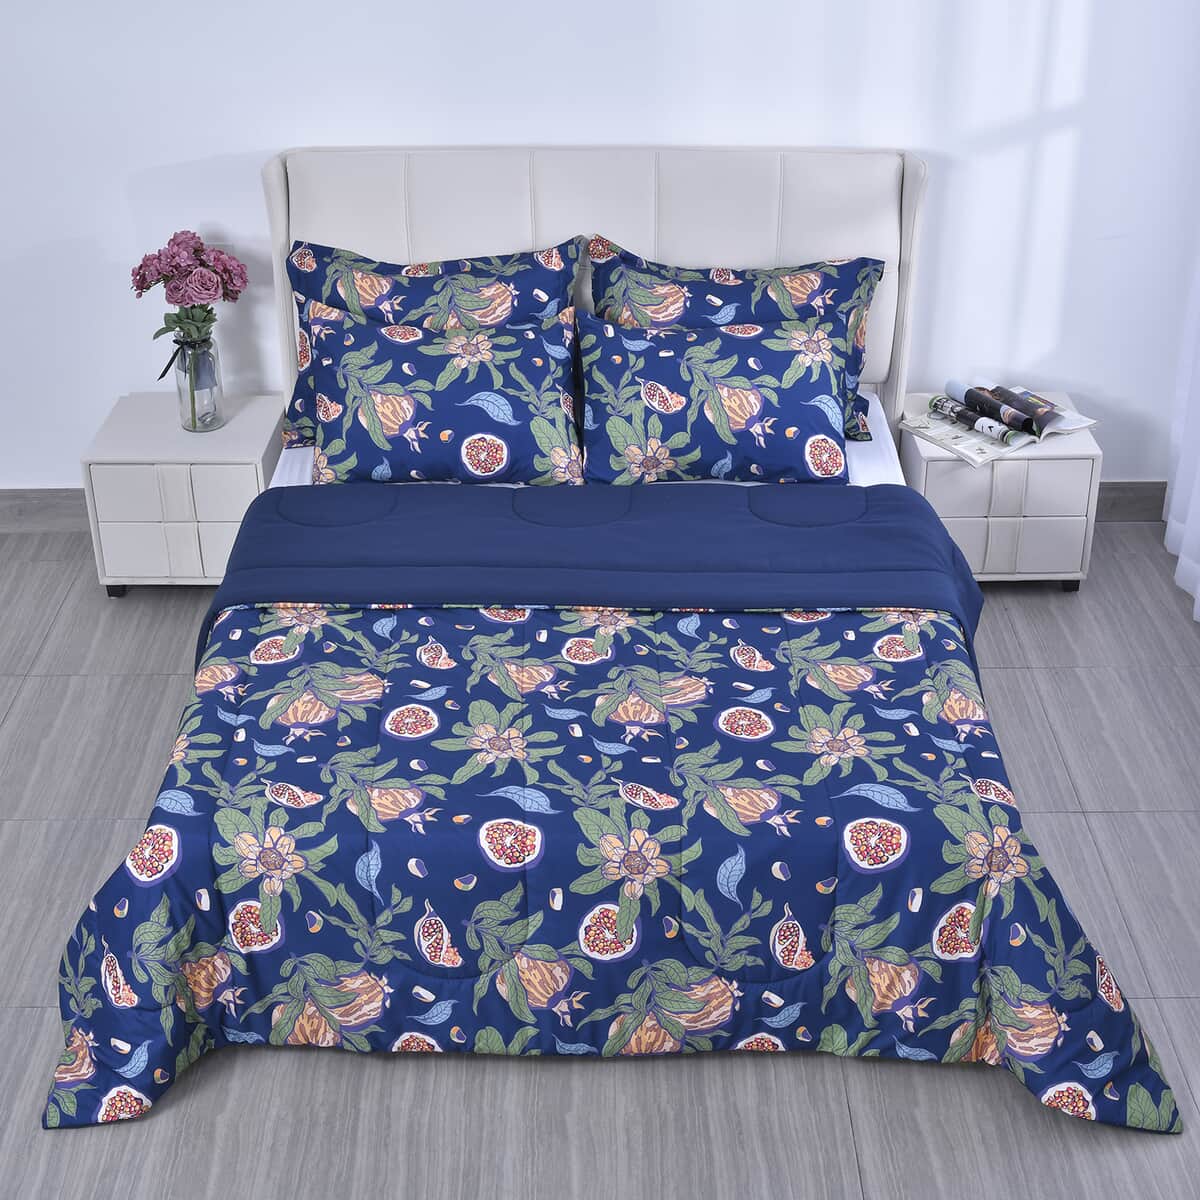 Homesmart Blue Digital Floral Printed Polyester 5pcs Comforter Set - Queen image number 1